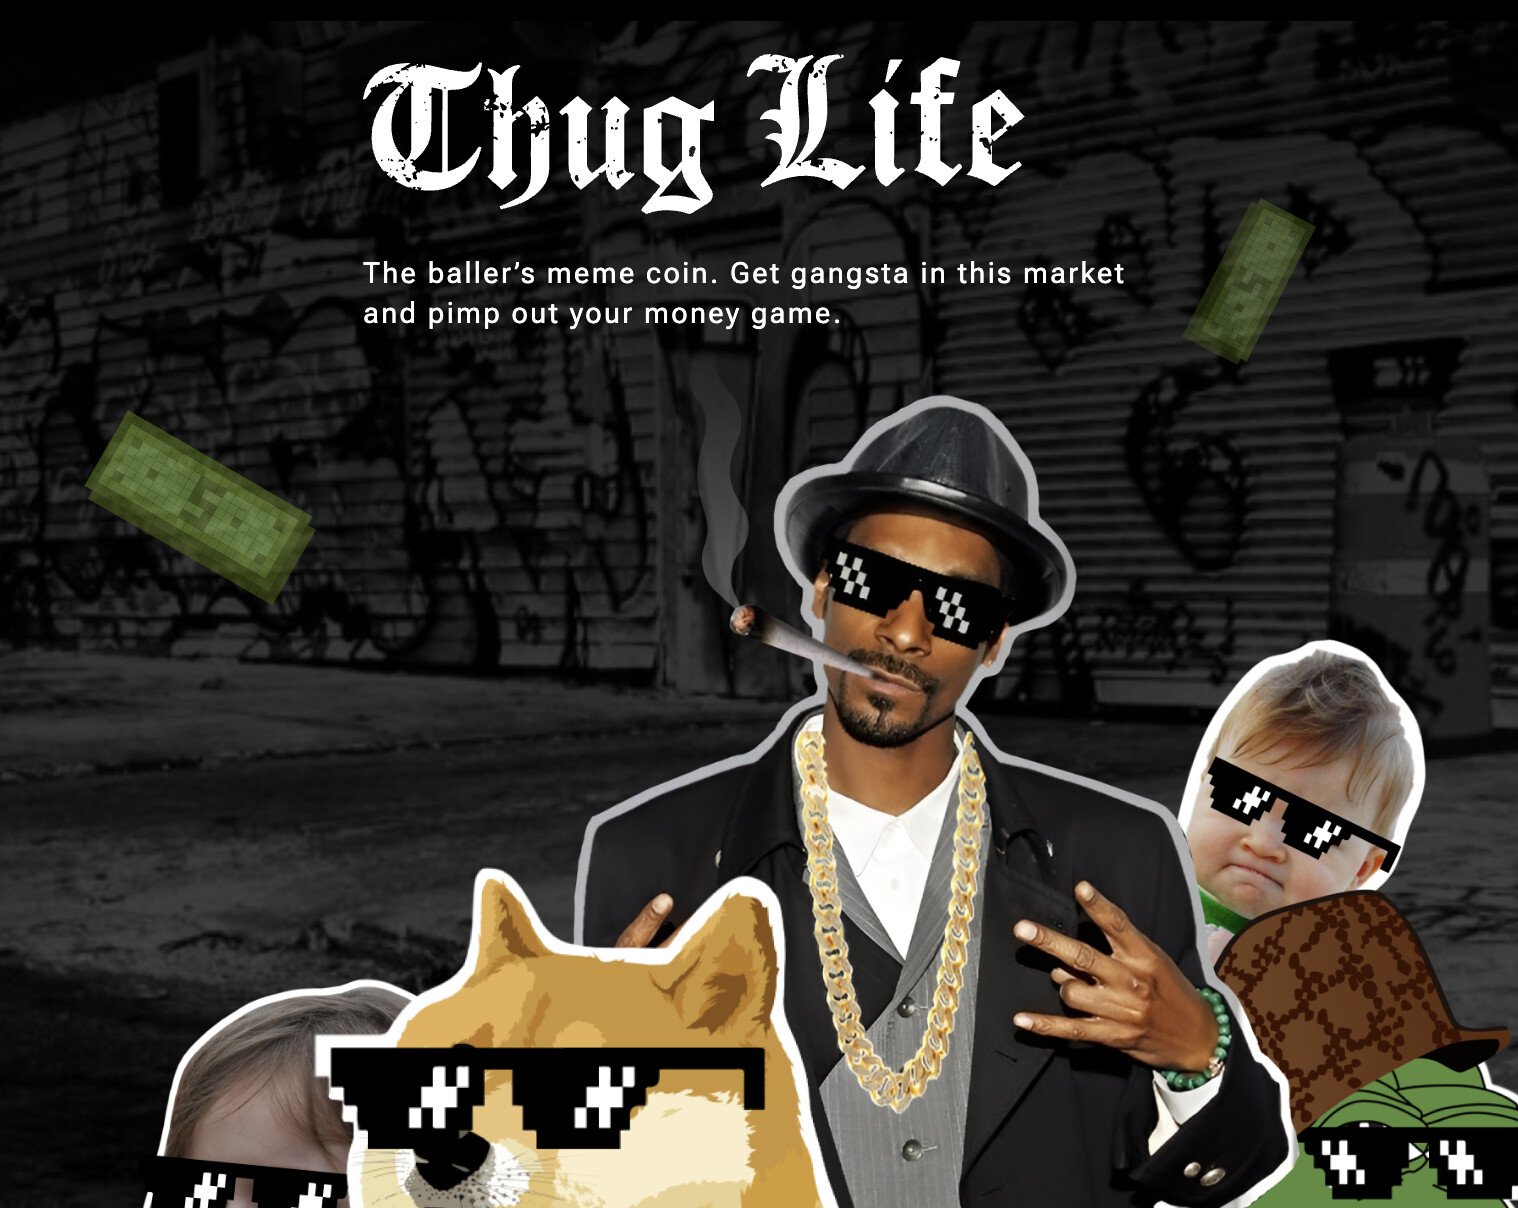 Esta moeda meme ligada a Snoop Dogg pode ser a próxima a explodir?